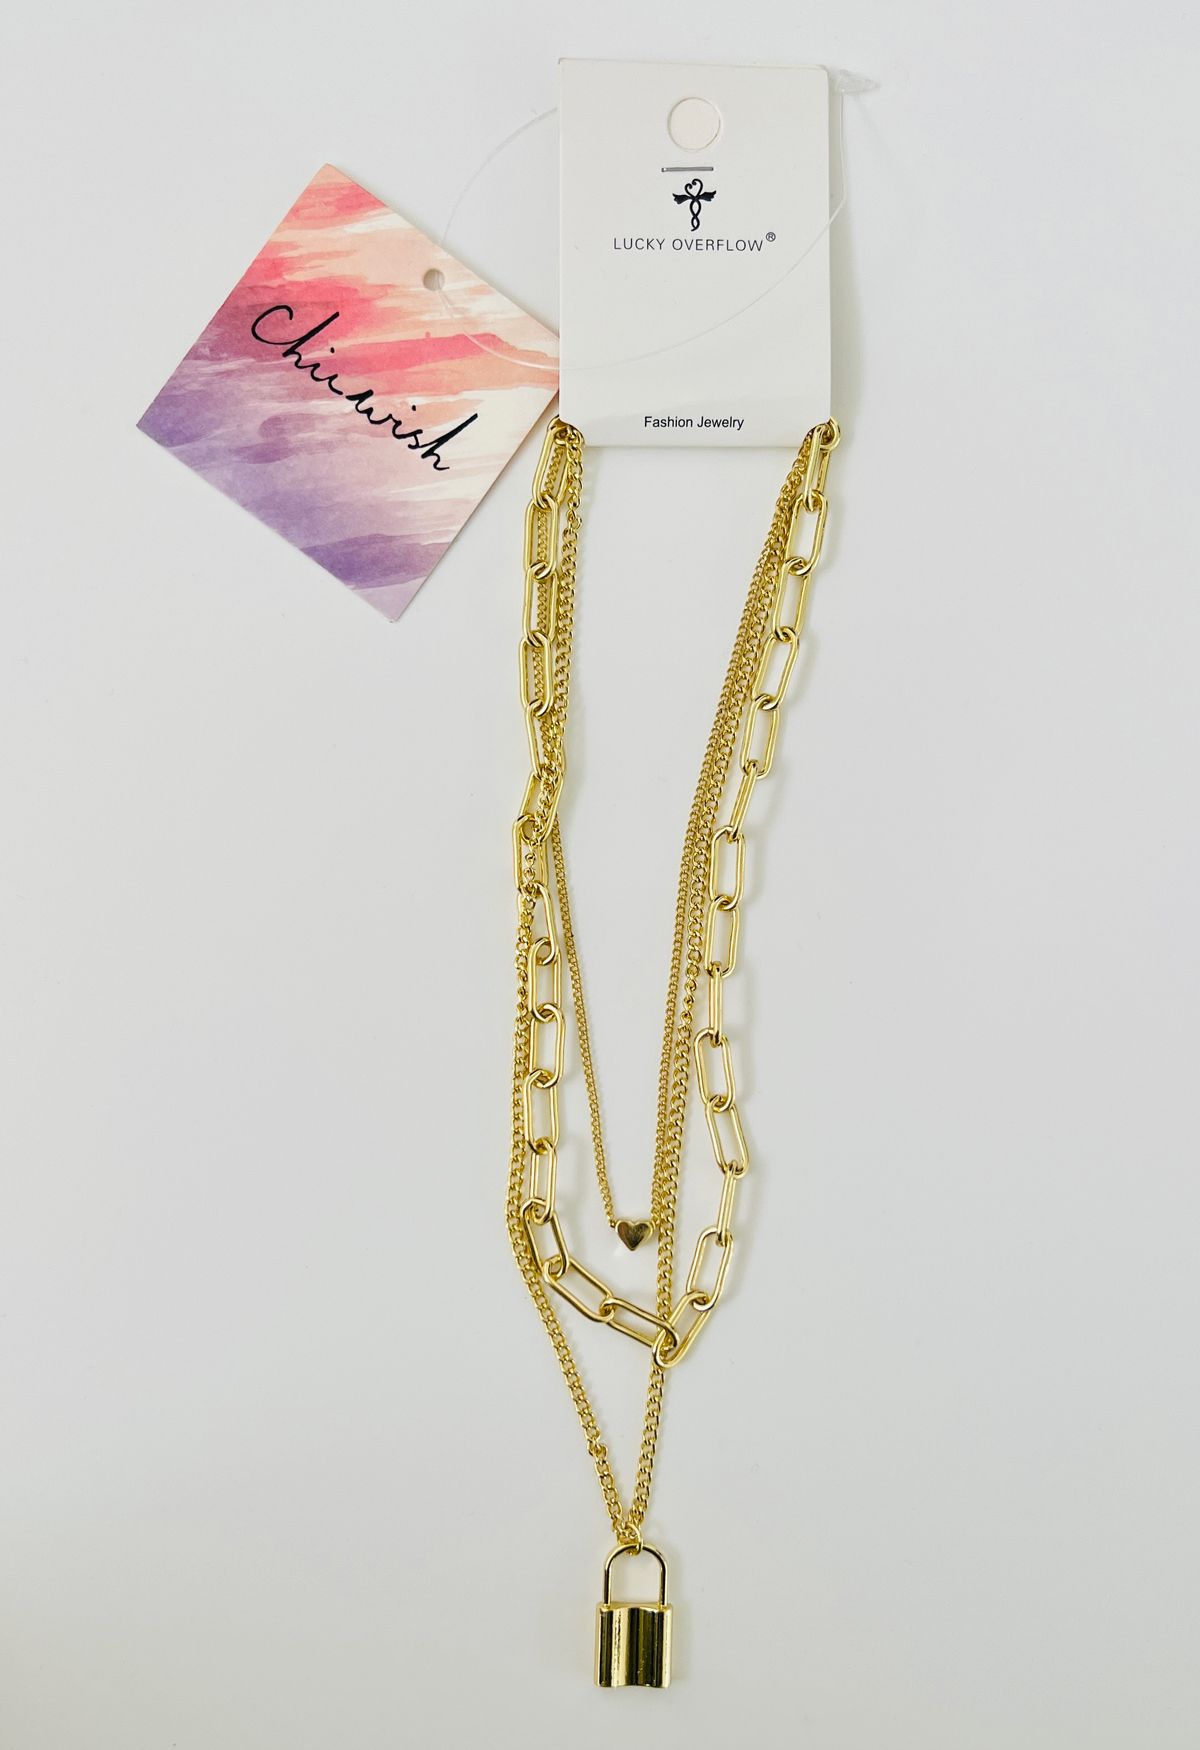 Mehrschichtige Halskette mit Verschlusskette in Gold